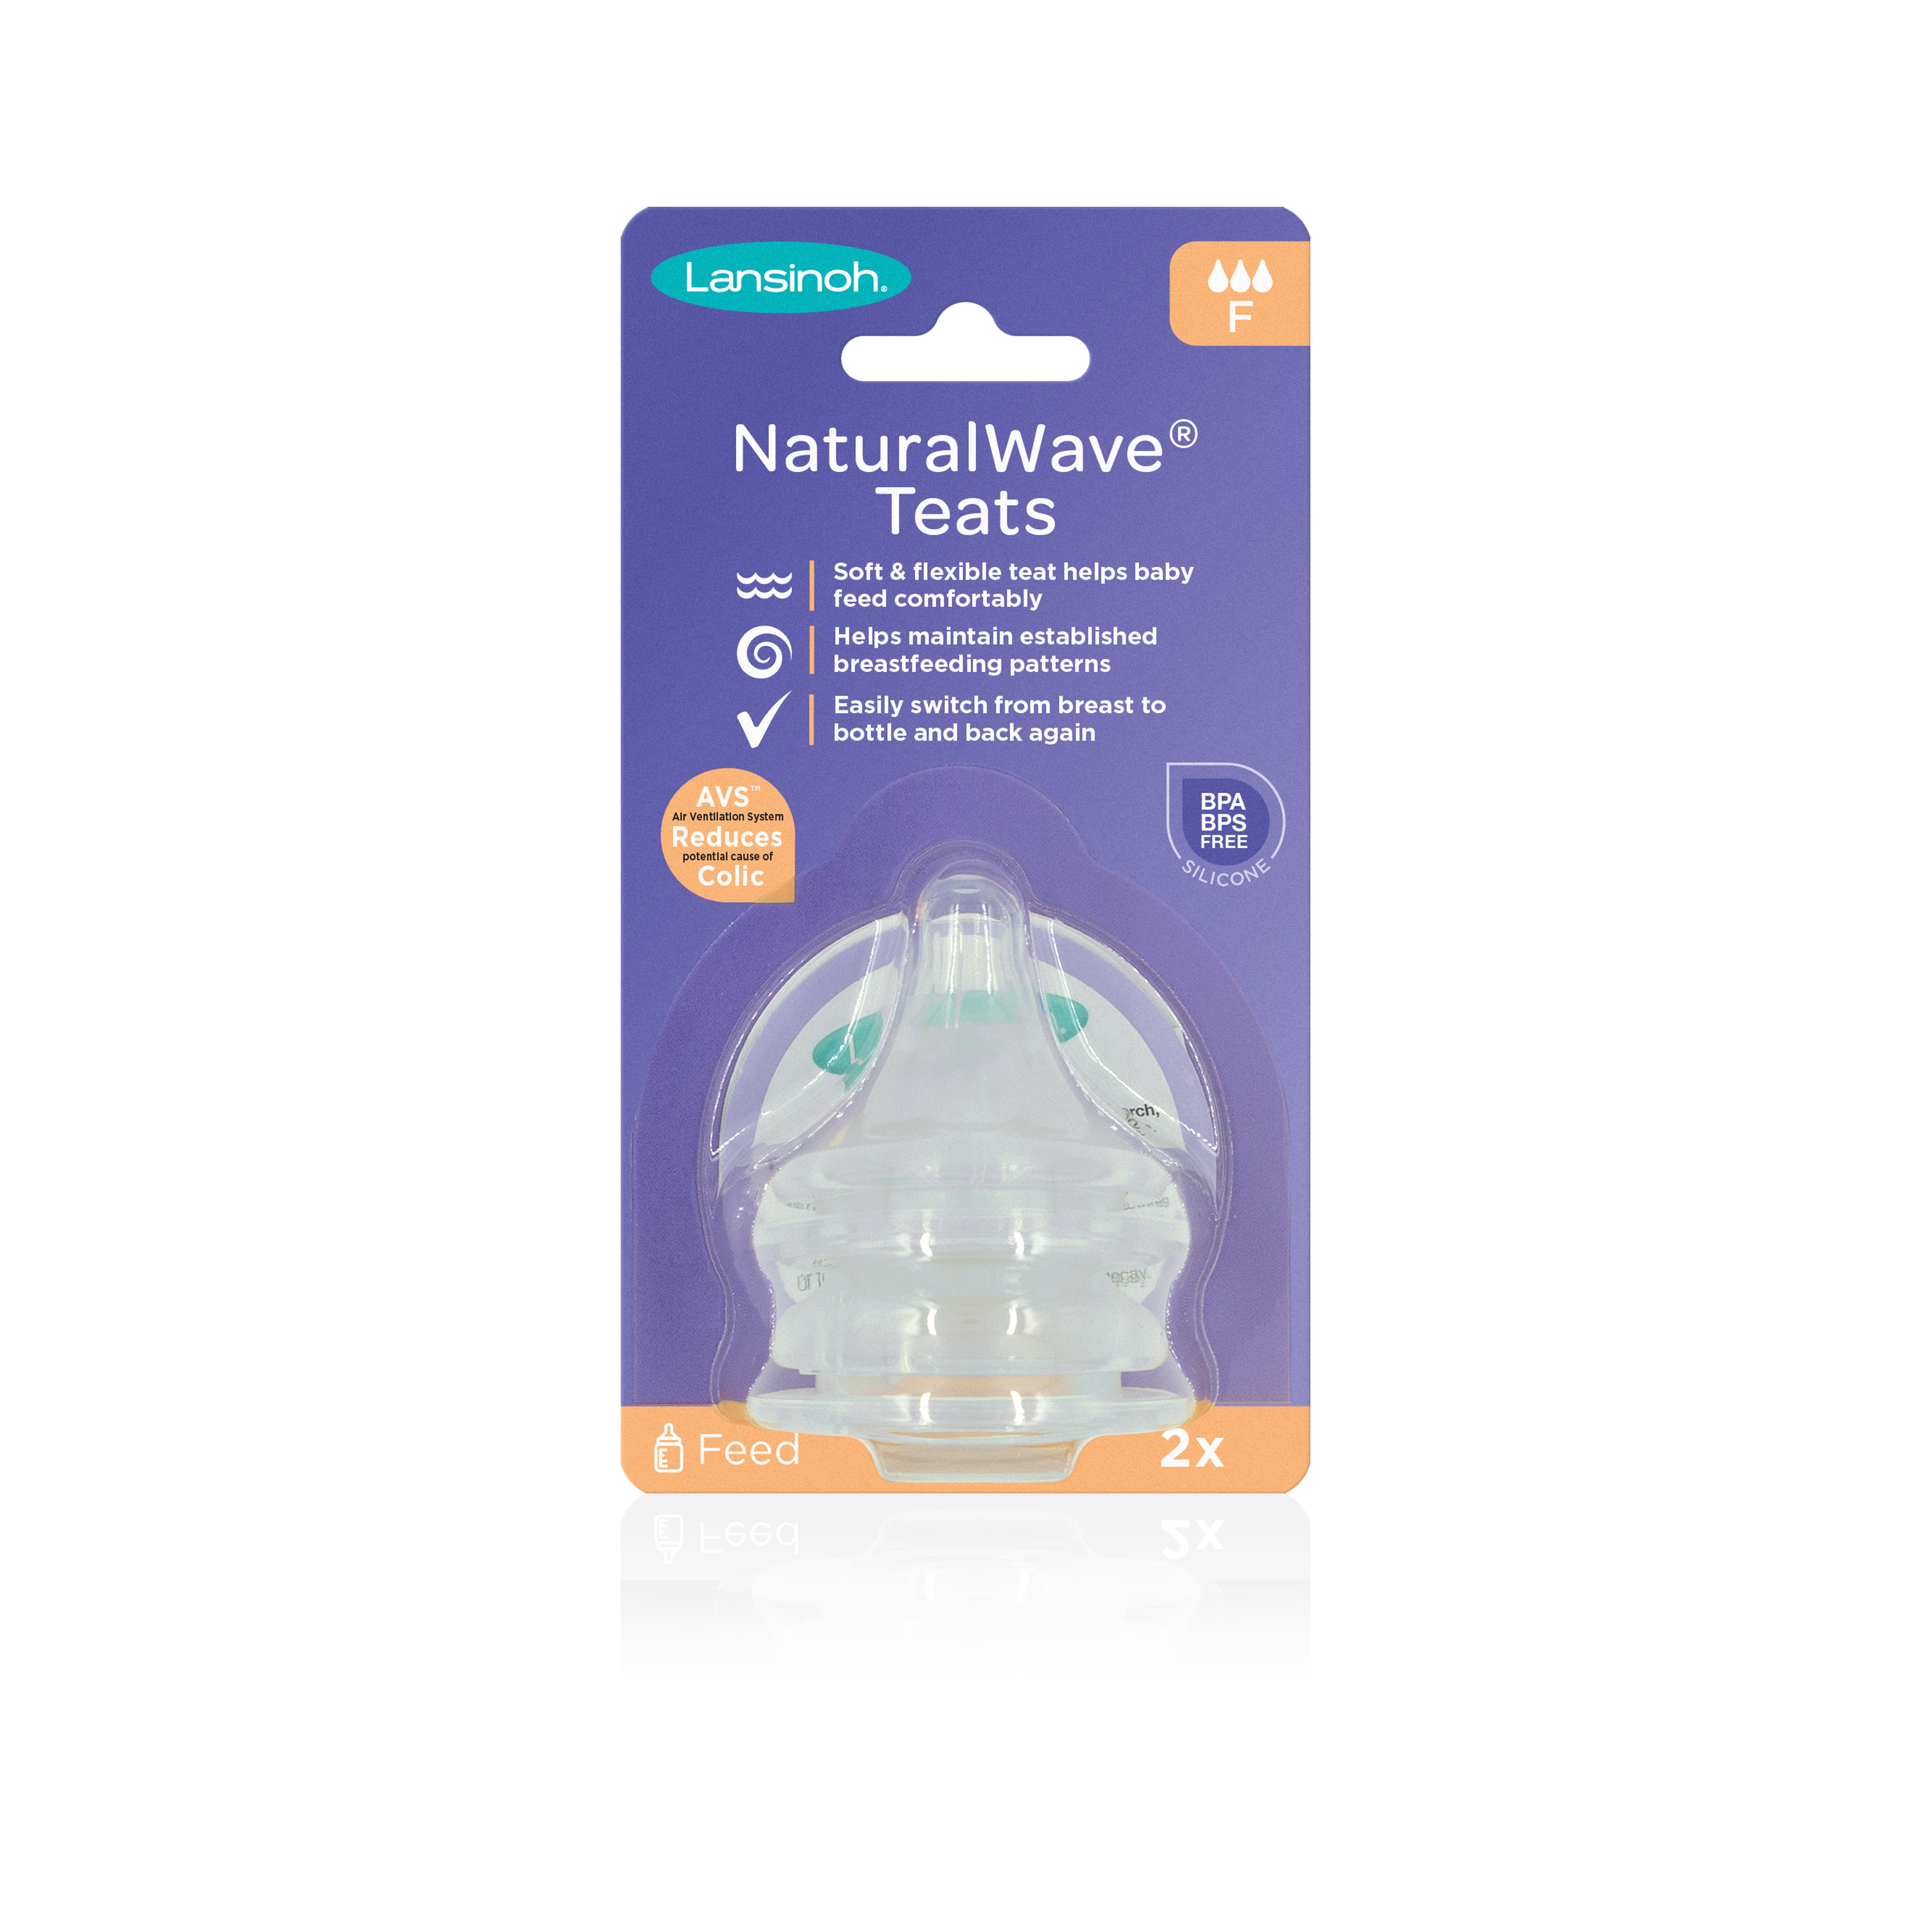 Lansinoh NaturalWave cumeľ rýchly prietok pre dojčené deti uľahčuje prechod na kŕmenie z fľaše